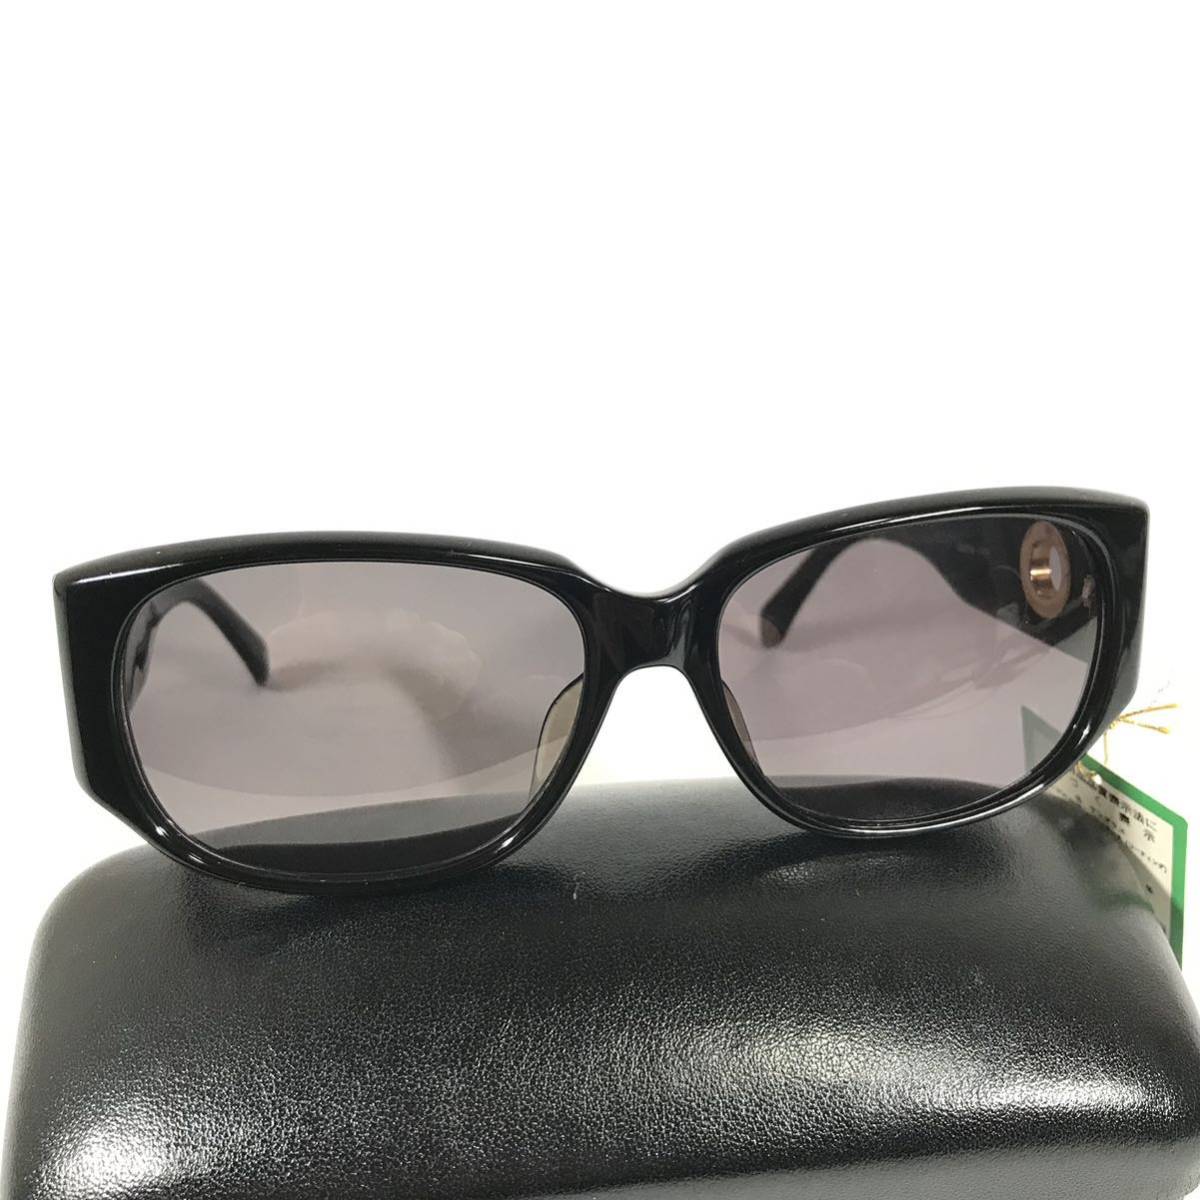  не использовался товар [ Castelbajac ] подлинный товар Castelbajac солнцезащитные очки Logo металлические принадлежности 9004 серый × чёрный цвет серия мужской женский обычная цена 2.8 десять тысяч иен стоимость доставки 520 иен 7